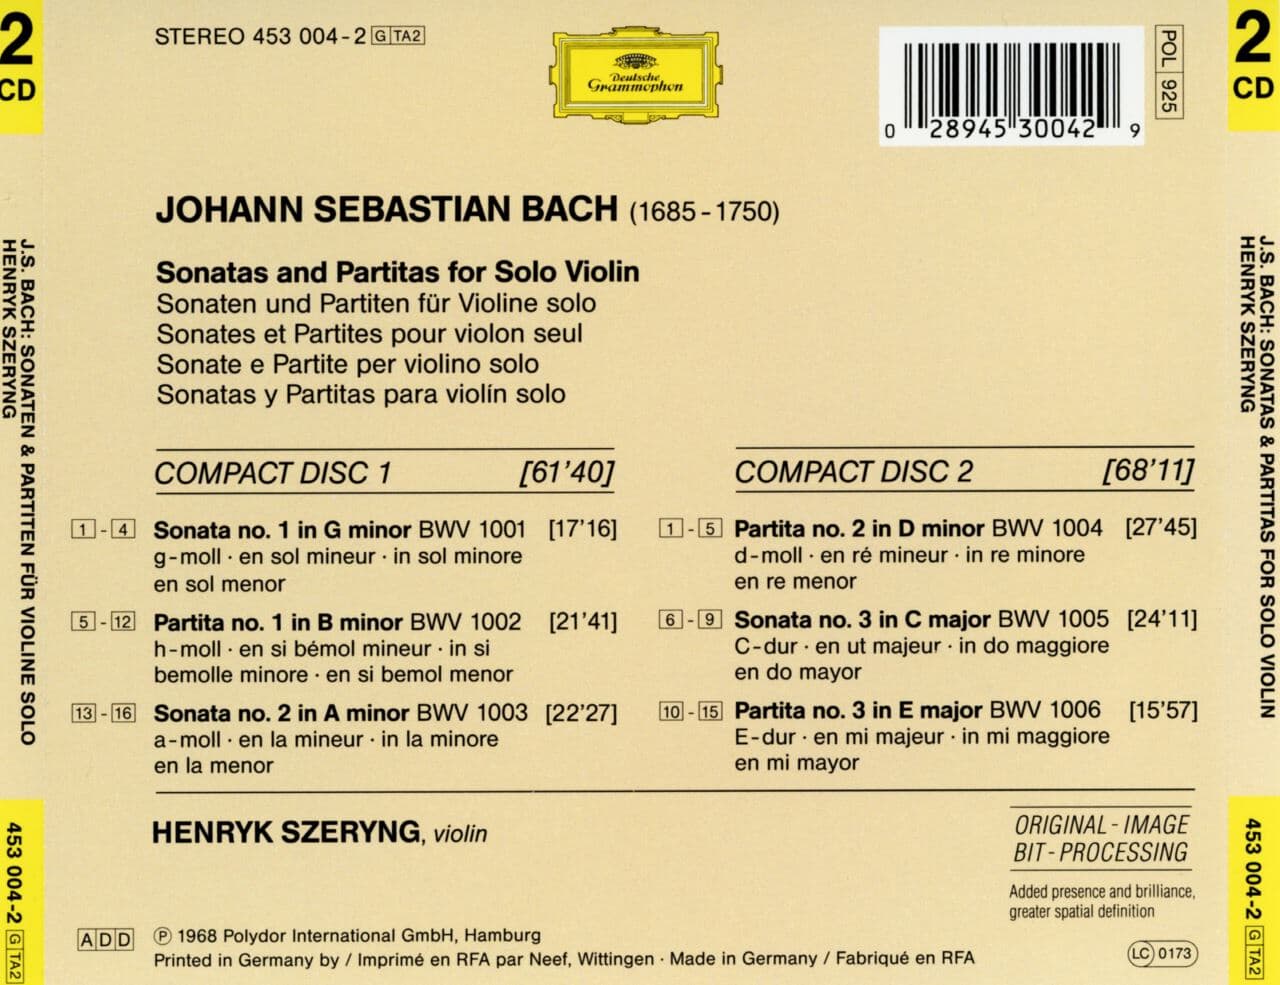 헨릭 쉐링 - Henryk Szeryng - Bach Sonatas & Partitas For Violin 2Cds [독일발매]